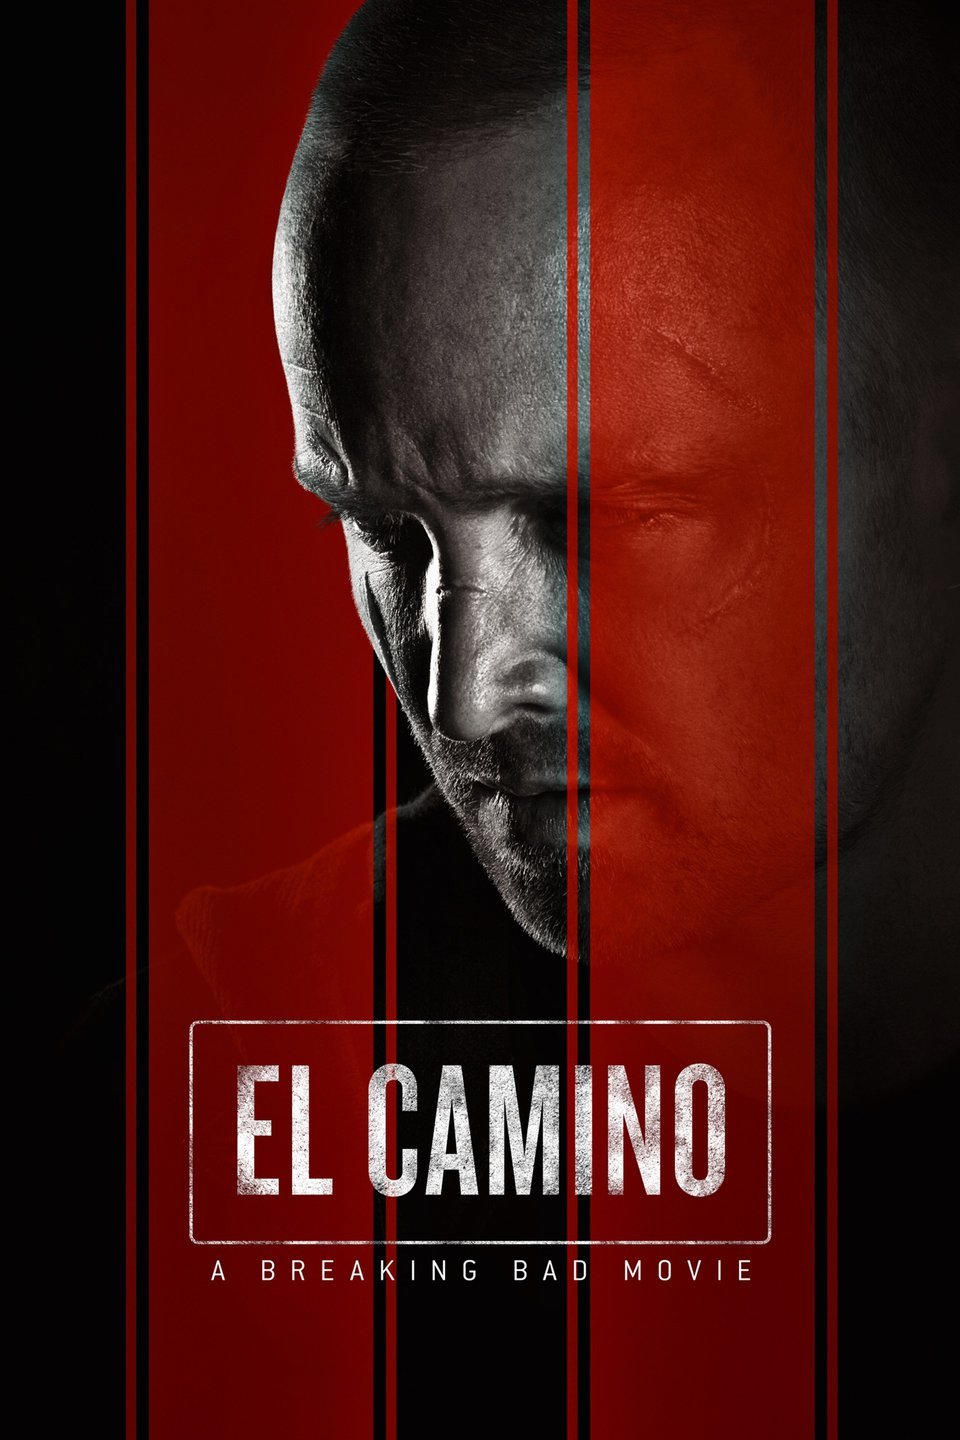 [ฝรั่ง] El Camino: A Breaking Bad Movie (2019) เอล คามิโน่: ดับเครื่องชน คนดีแตก (เดอะ มูฟวี่) [1080p] [Netflix] [พากย์อังกฤษ 5.1] [บรรยายไทย + อังกฤษ] [เสียงอังกฤษ + ซับไทย] [OPENLOAD]